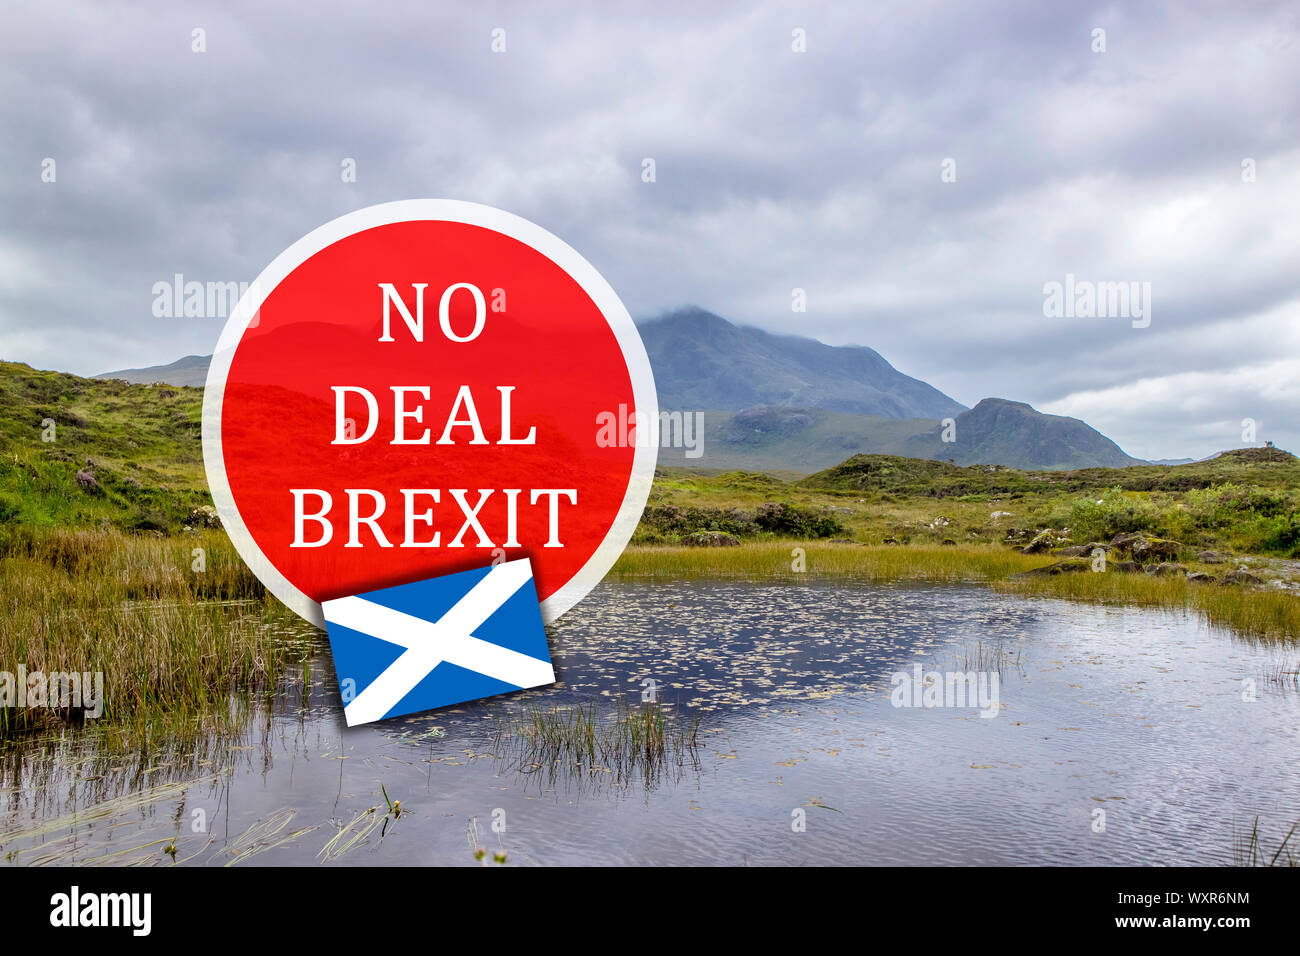 Kein deal BREXIT in Schottland/Irland UK Konzept. Scottish Highland Natur Hintergrund mit roten Warnzeichen. Stockfoto